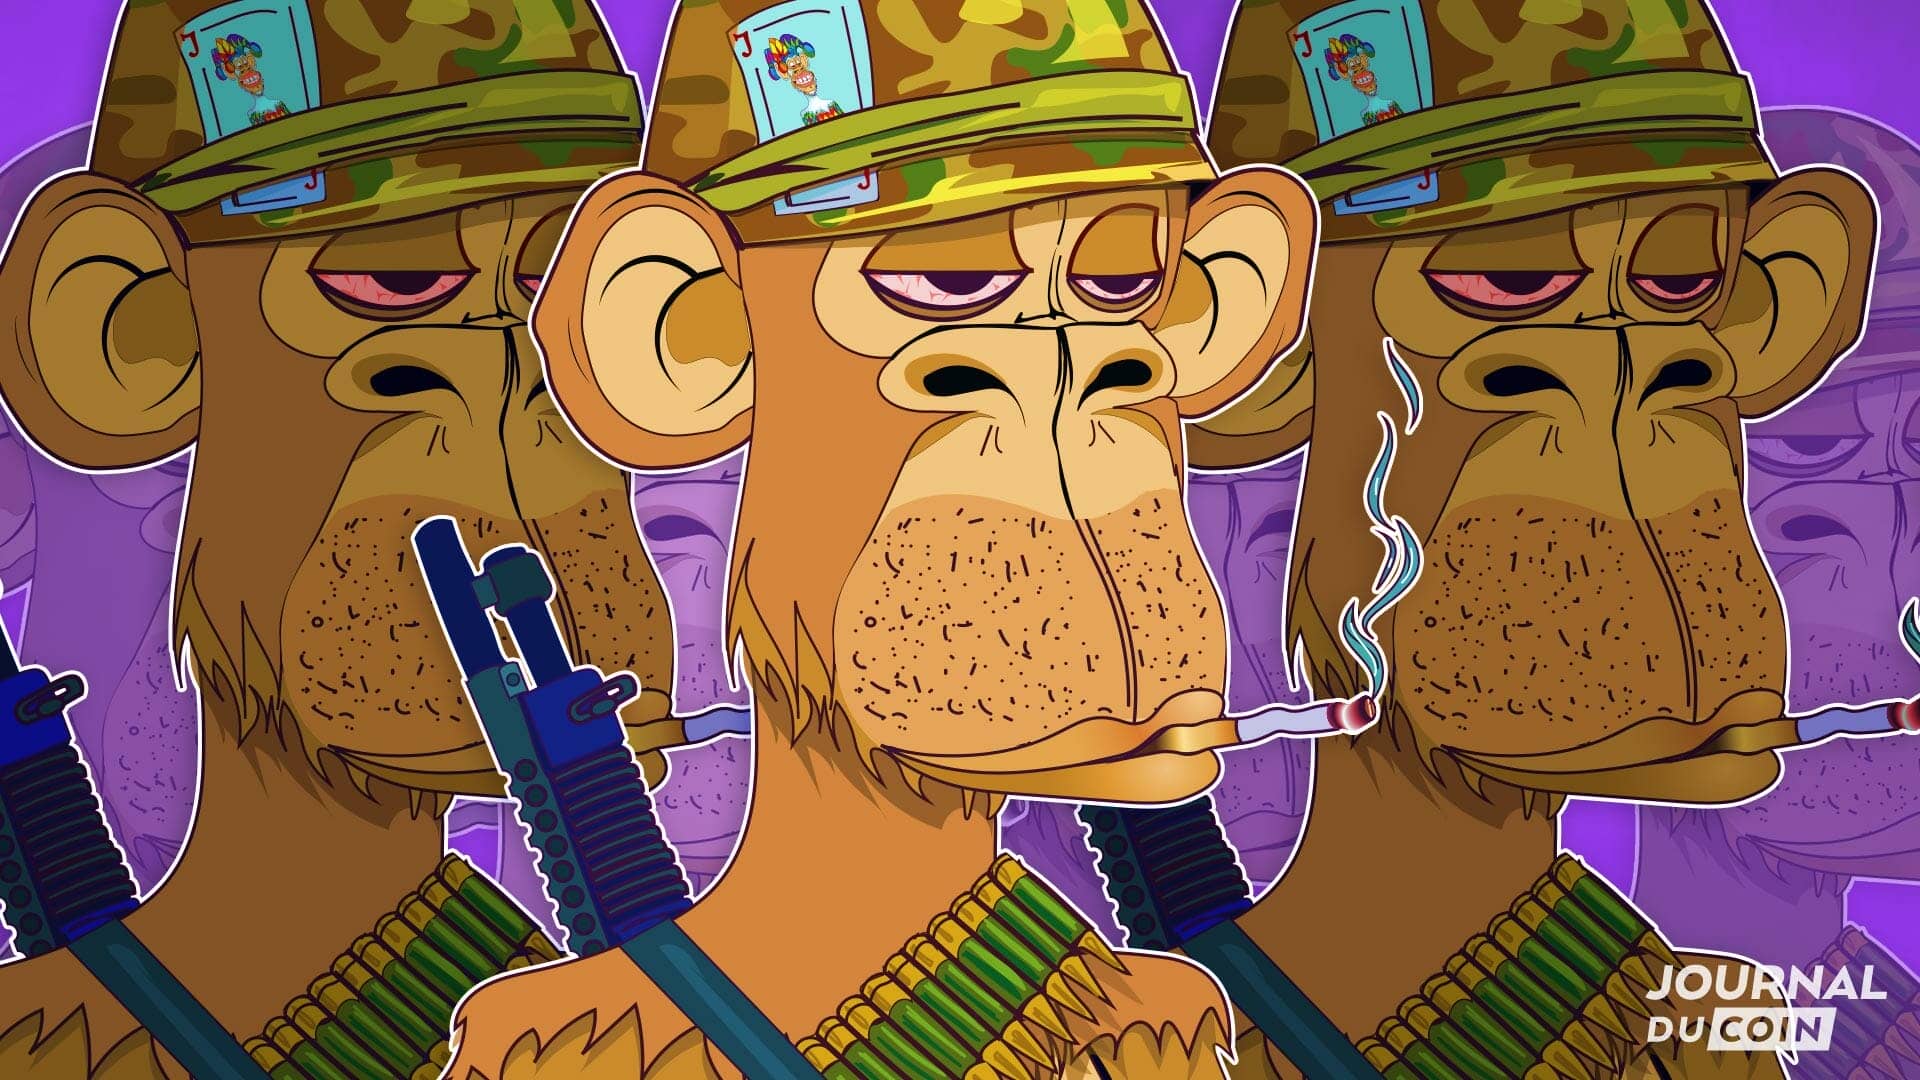 Les Bored Ape, avatars NFT participant au BattleBot Royal de cette dystopie crypto. symbol des play to earn et du metaverse